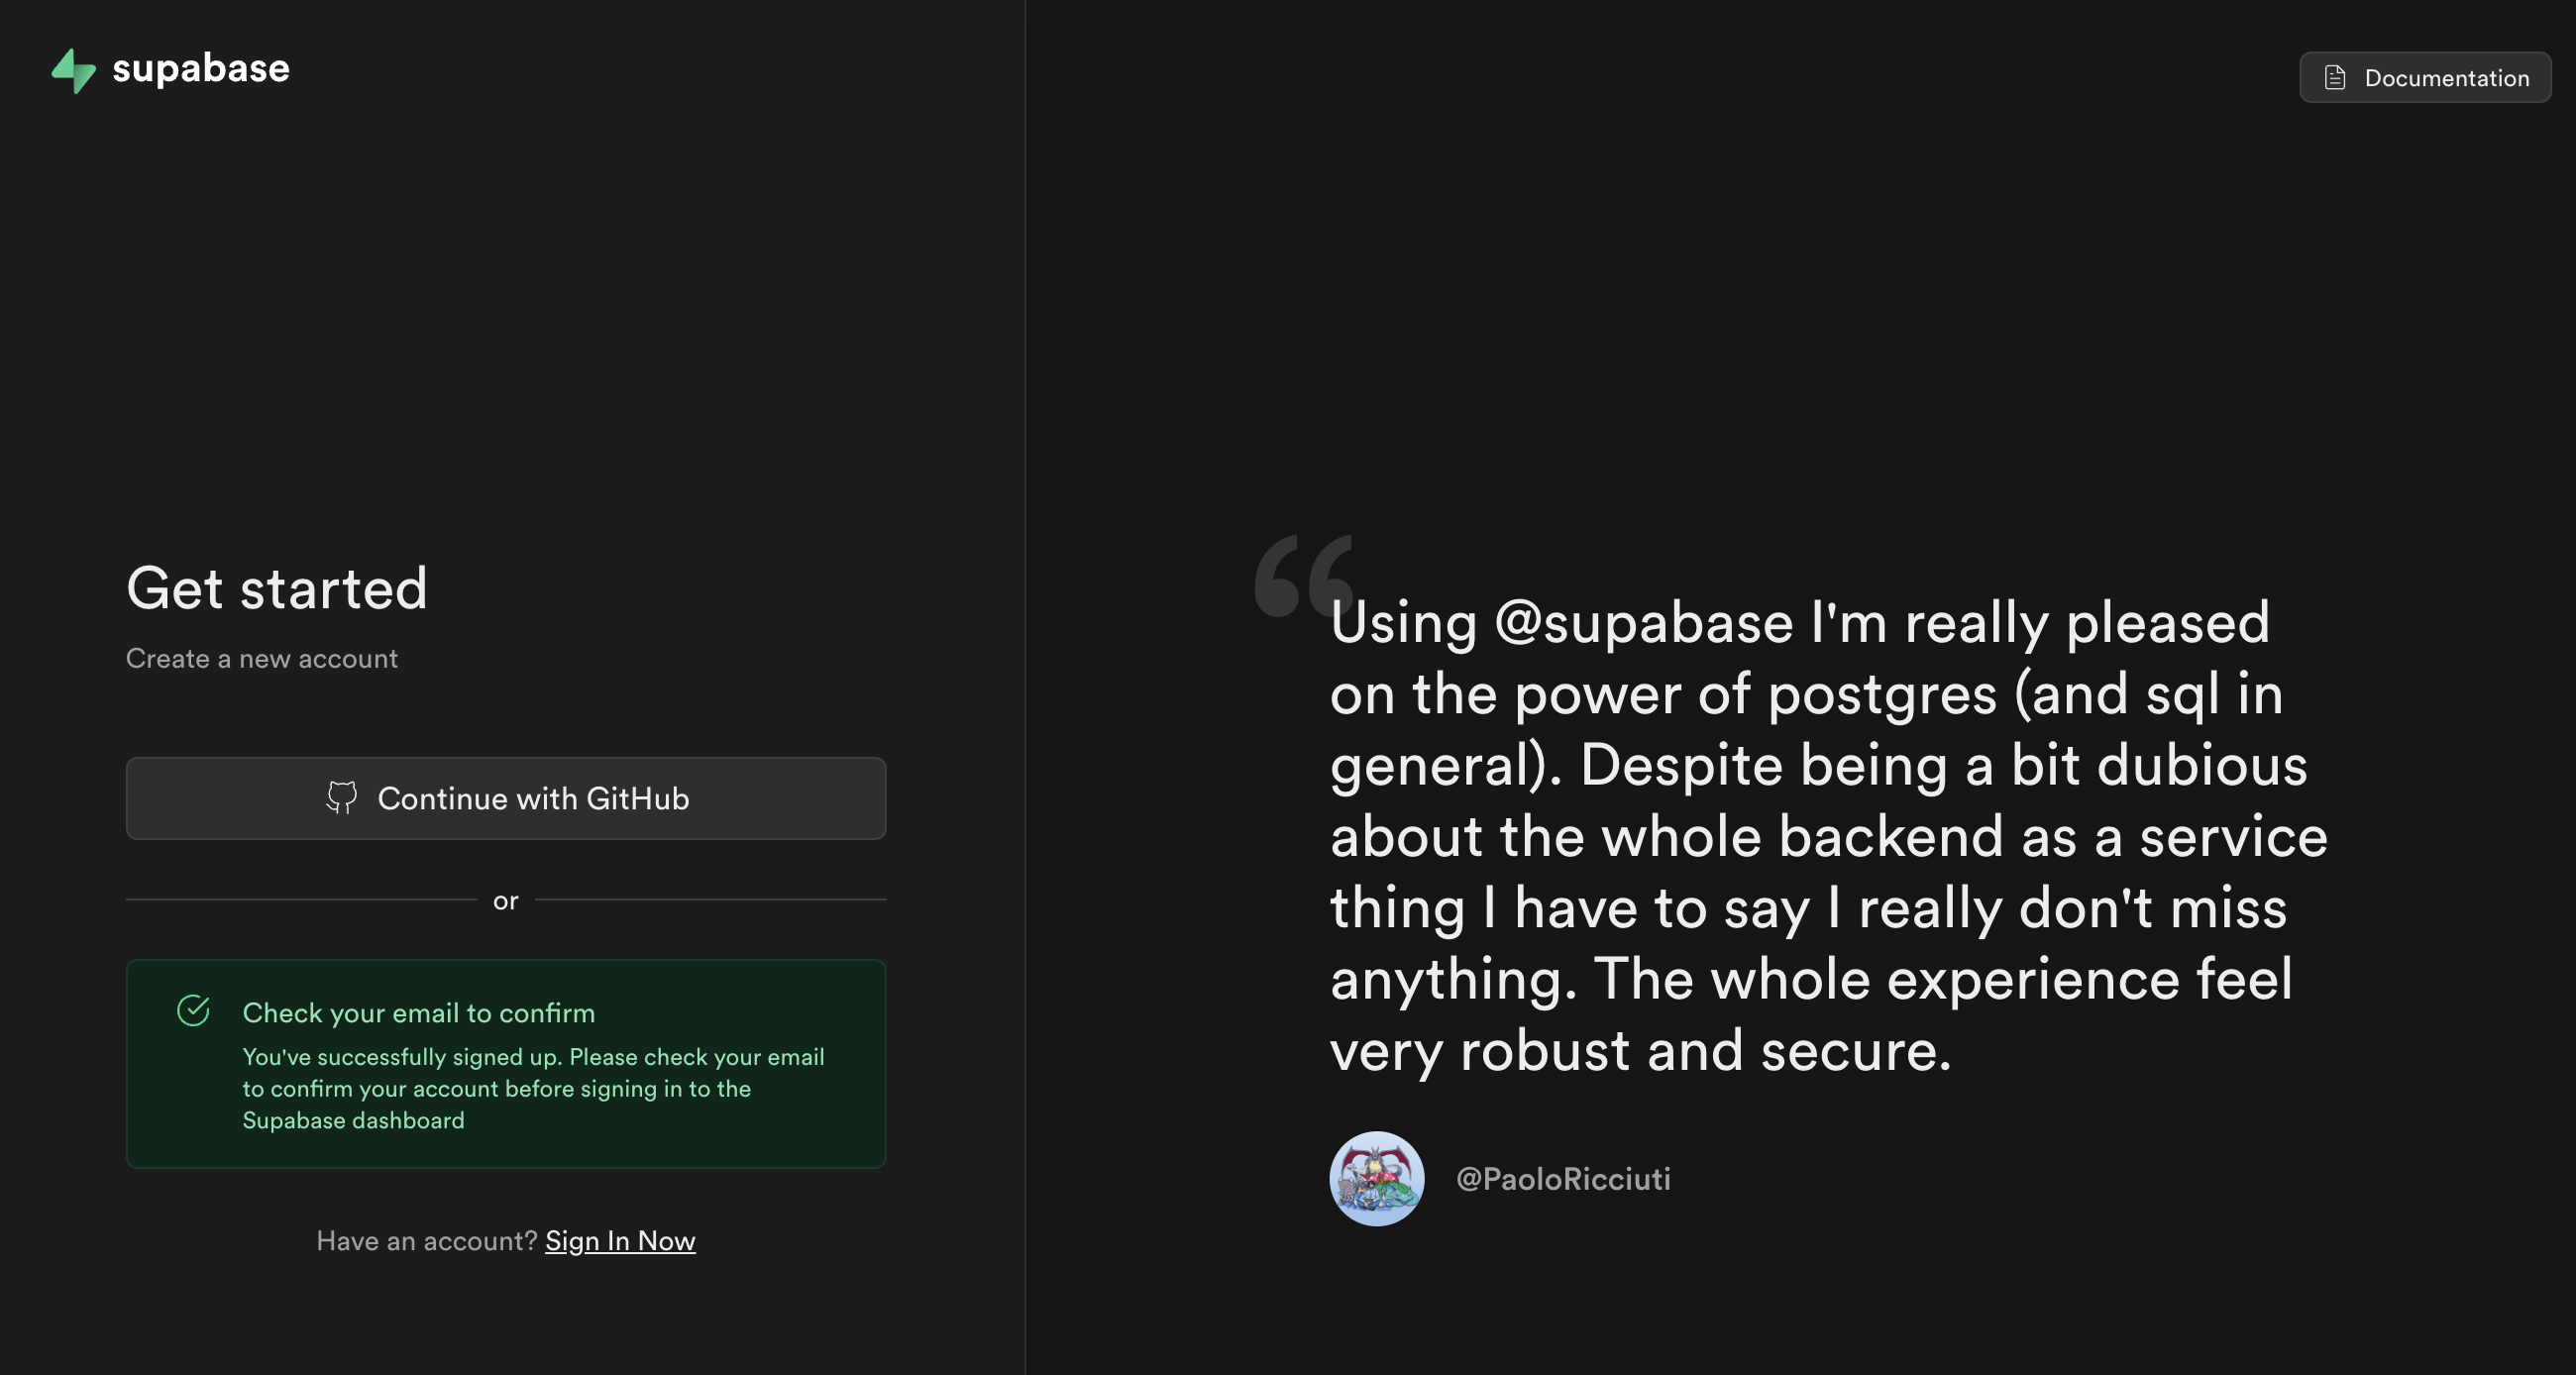 Supabaseのサインアップ画面でのメール確認メッセージ